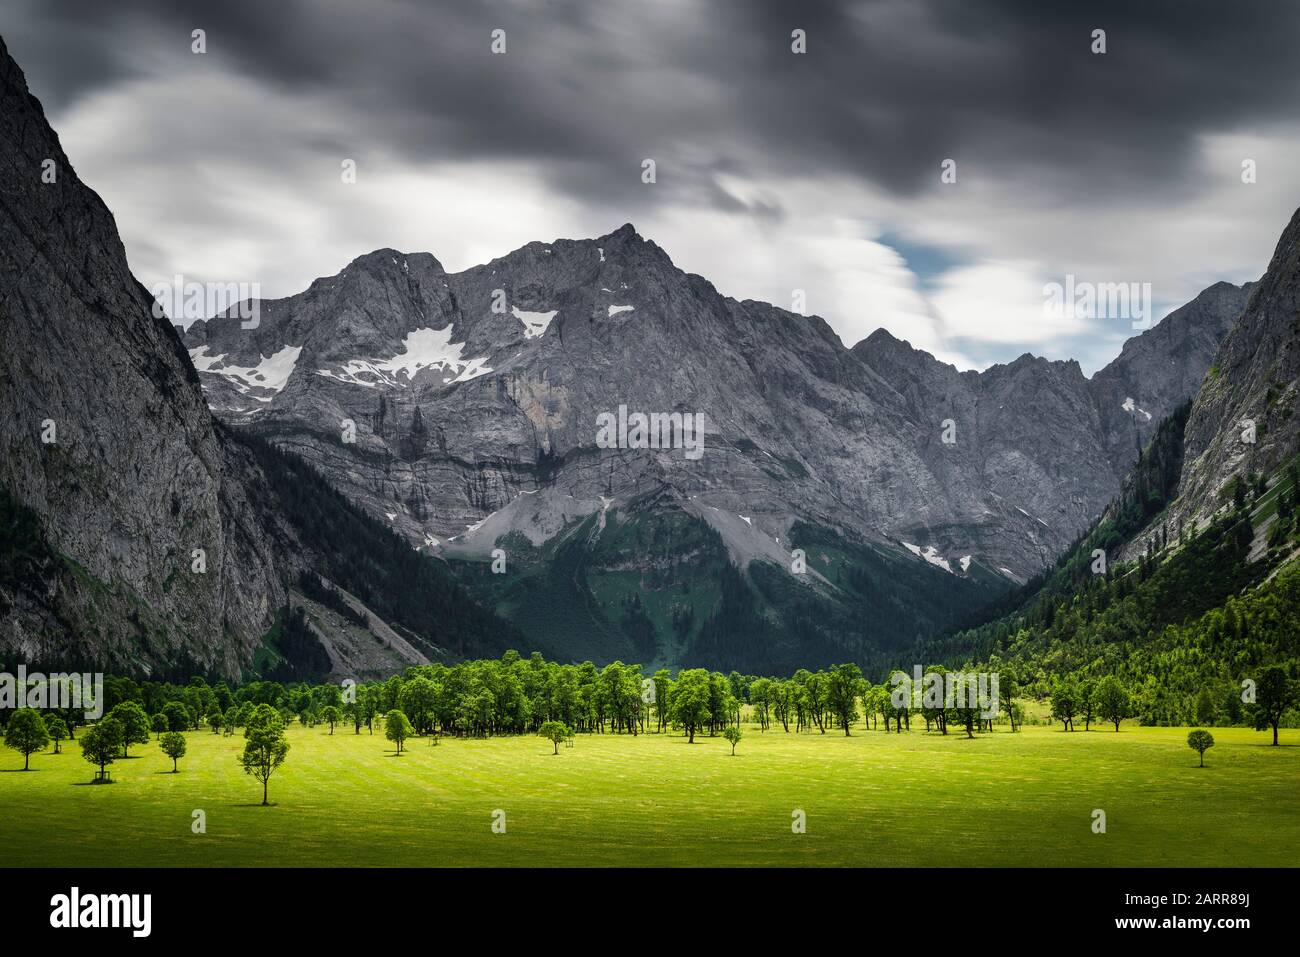 Nuages sombres avec pluie et illuminations ensoleillées sur les massifs rocheux de montagne et les érables du pâturage Grosser Ahornboden, Tyrol, Autriche, Europe Banque D'Images